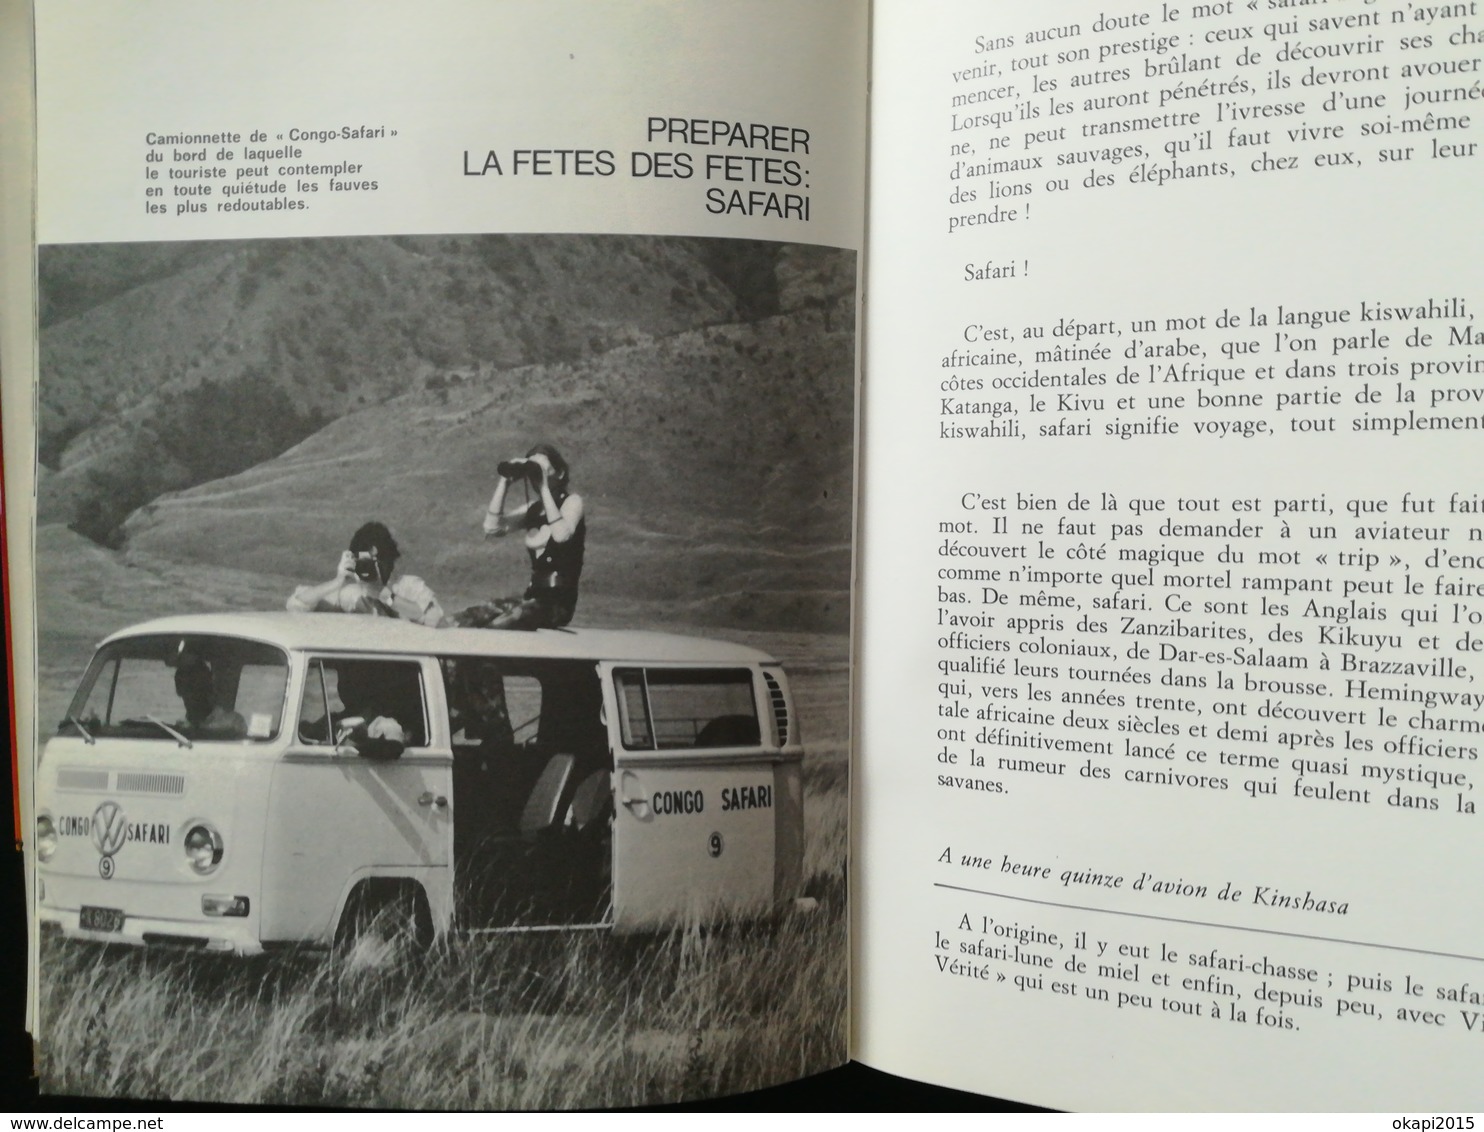 CONGO DES ANNÉES 1970 ZAÏRE LIVRE "SAFARI AU CONGO"  tourisme Histoire ANNÉE 1971 colonie Belgique